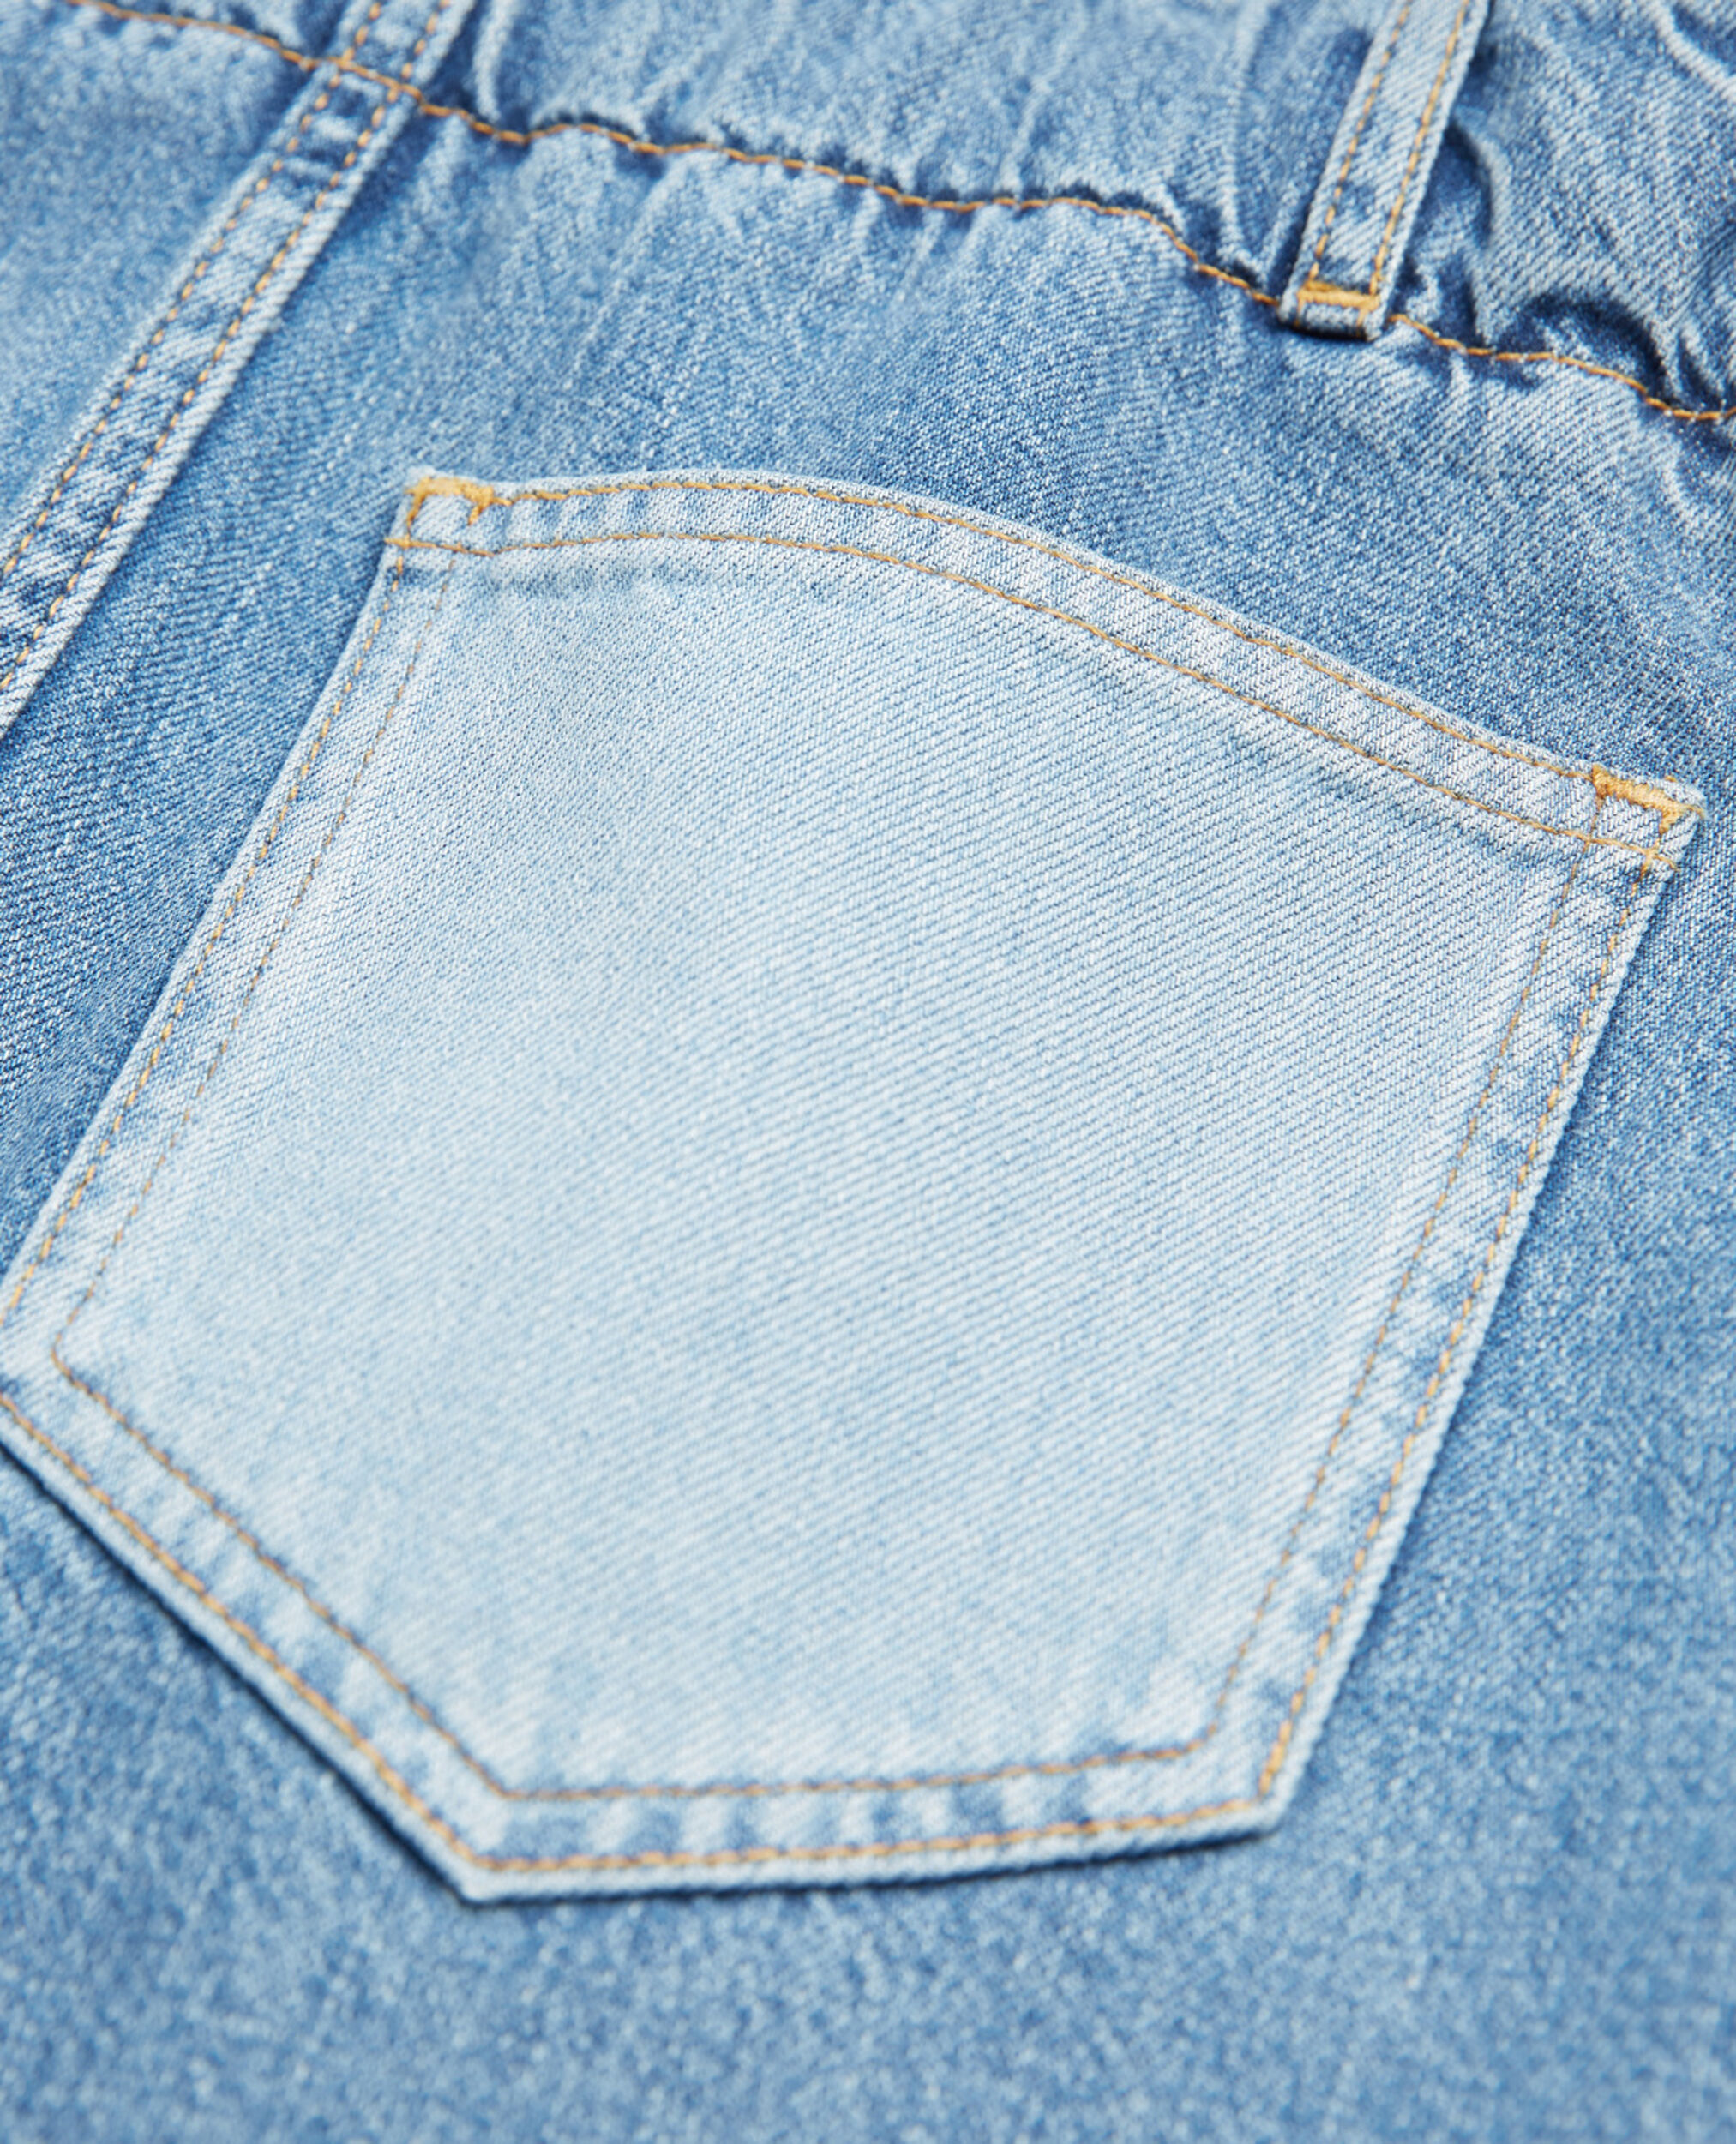 Jupe courte en jean poches patchwork, BLUE WASHED, hi-res image number null